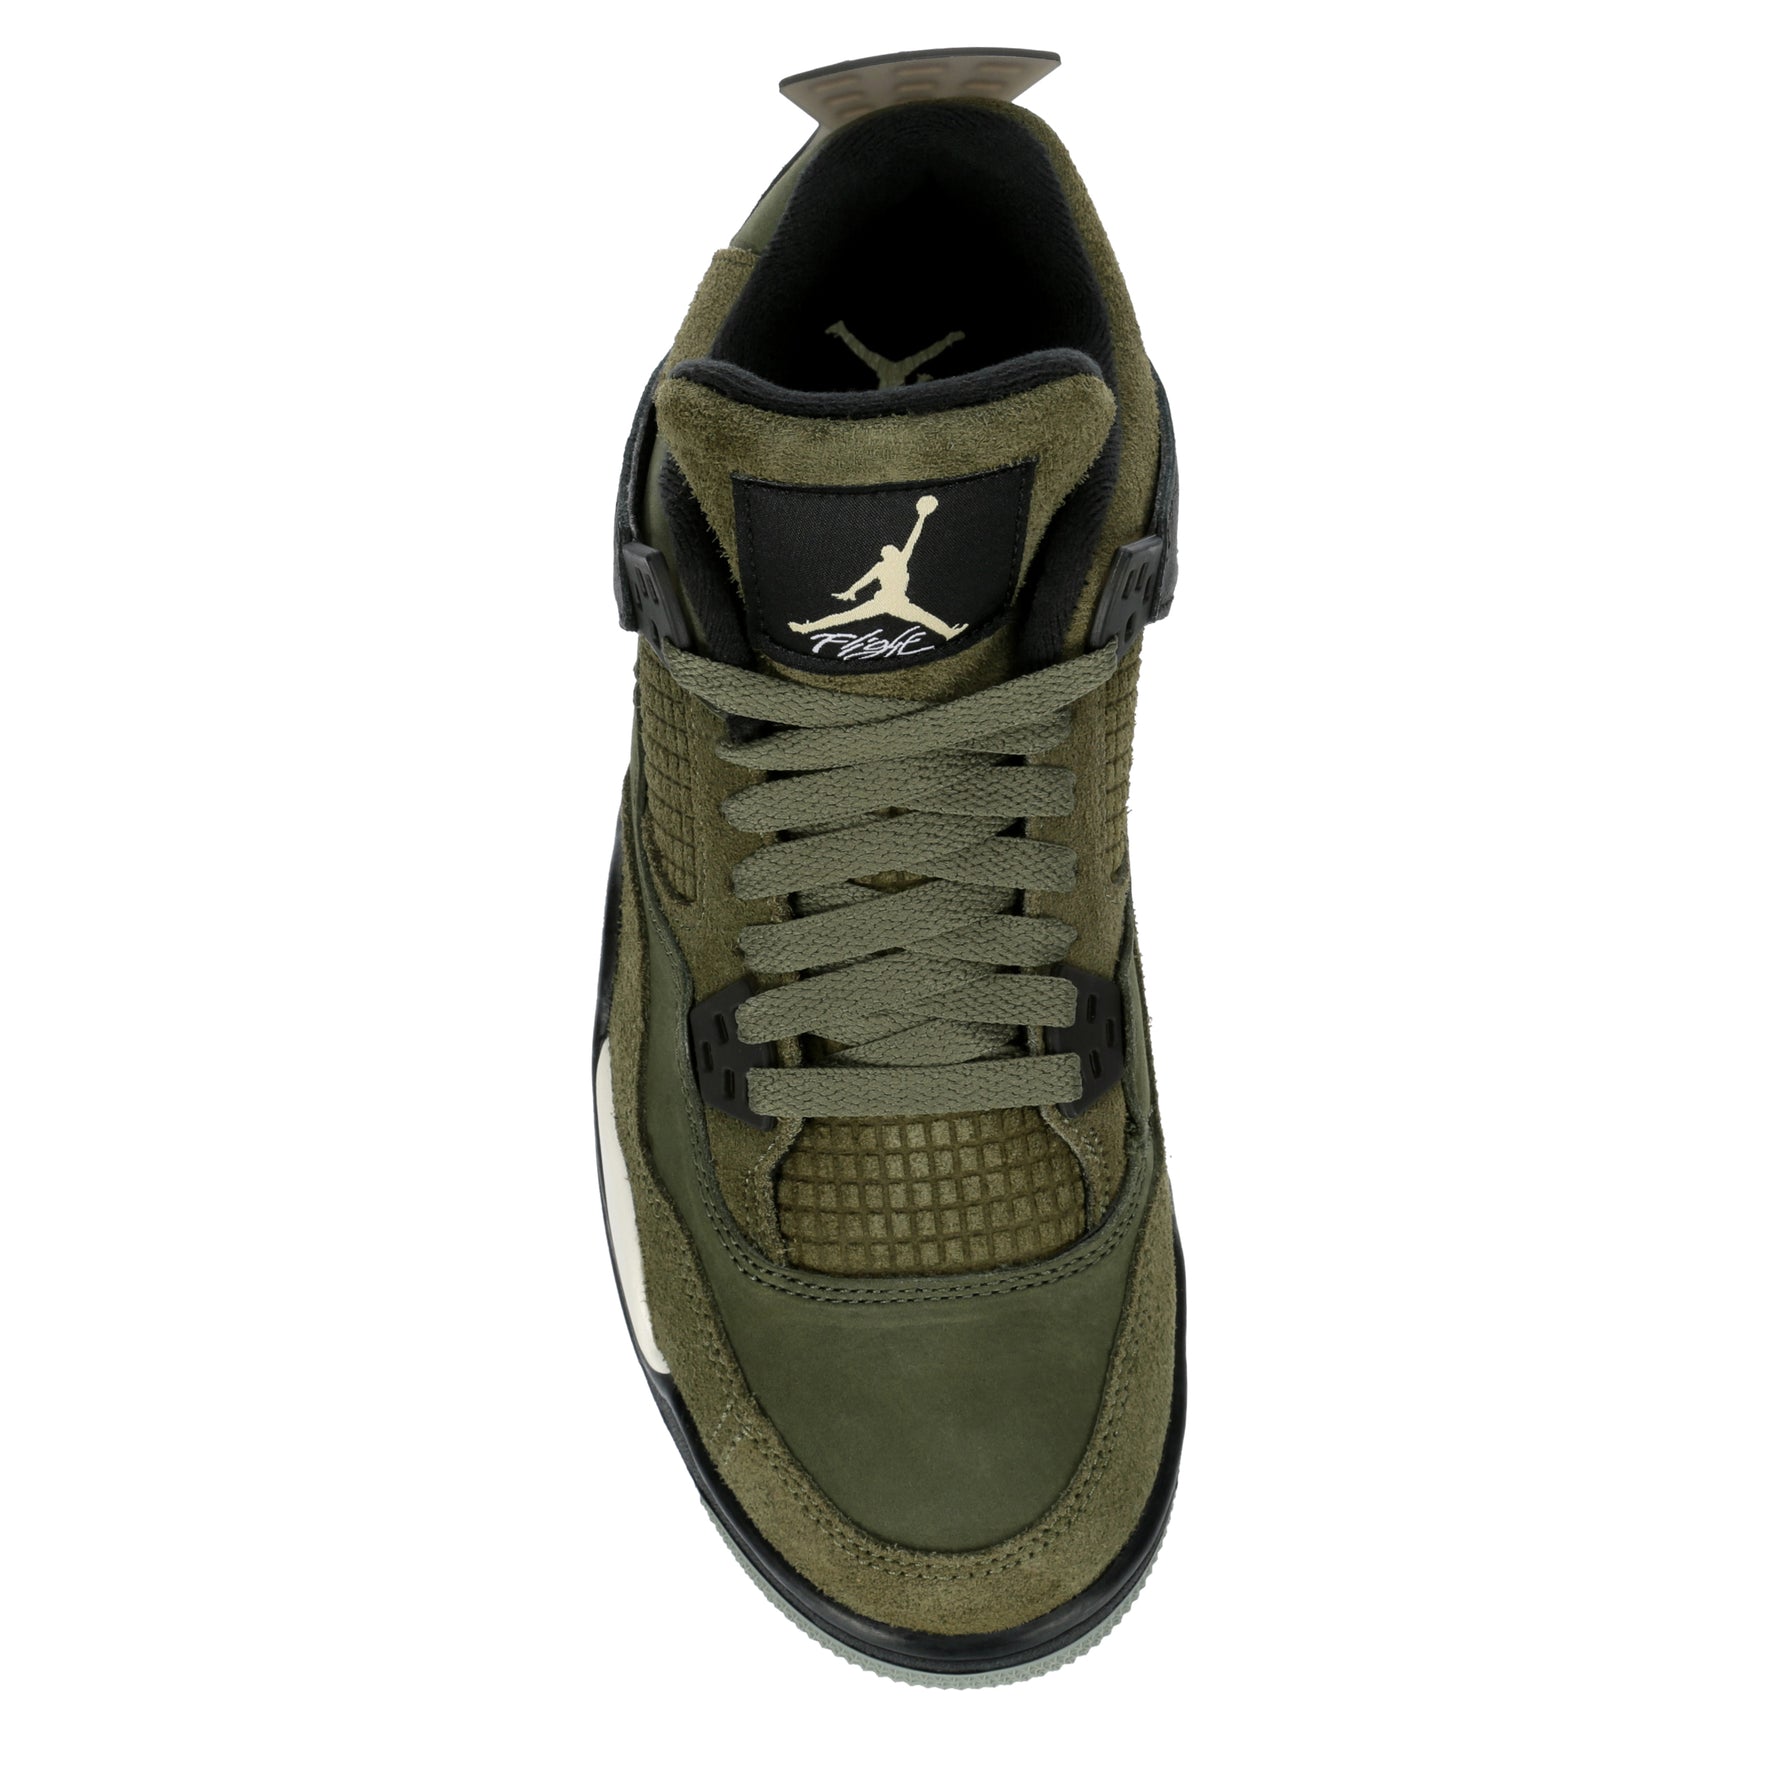 Jordan Air Jordan 4 Retro SE Craft Big Kid Boys' Sneaker Top